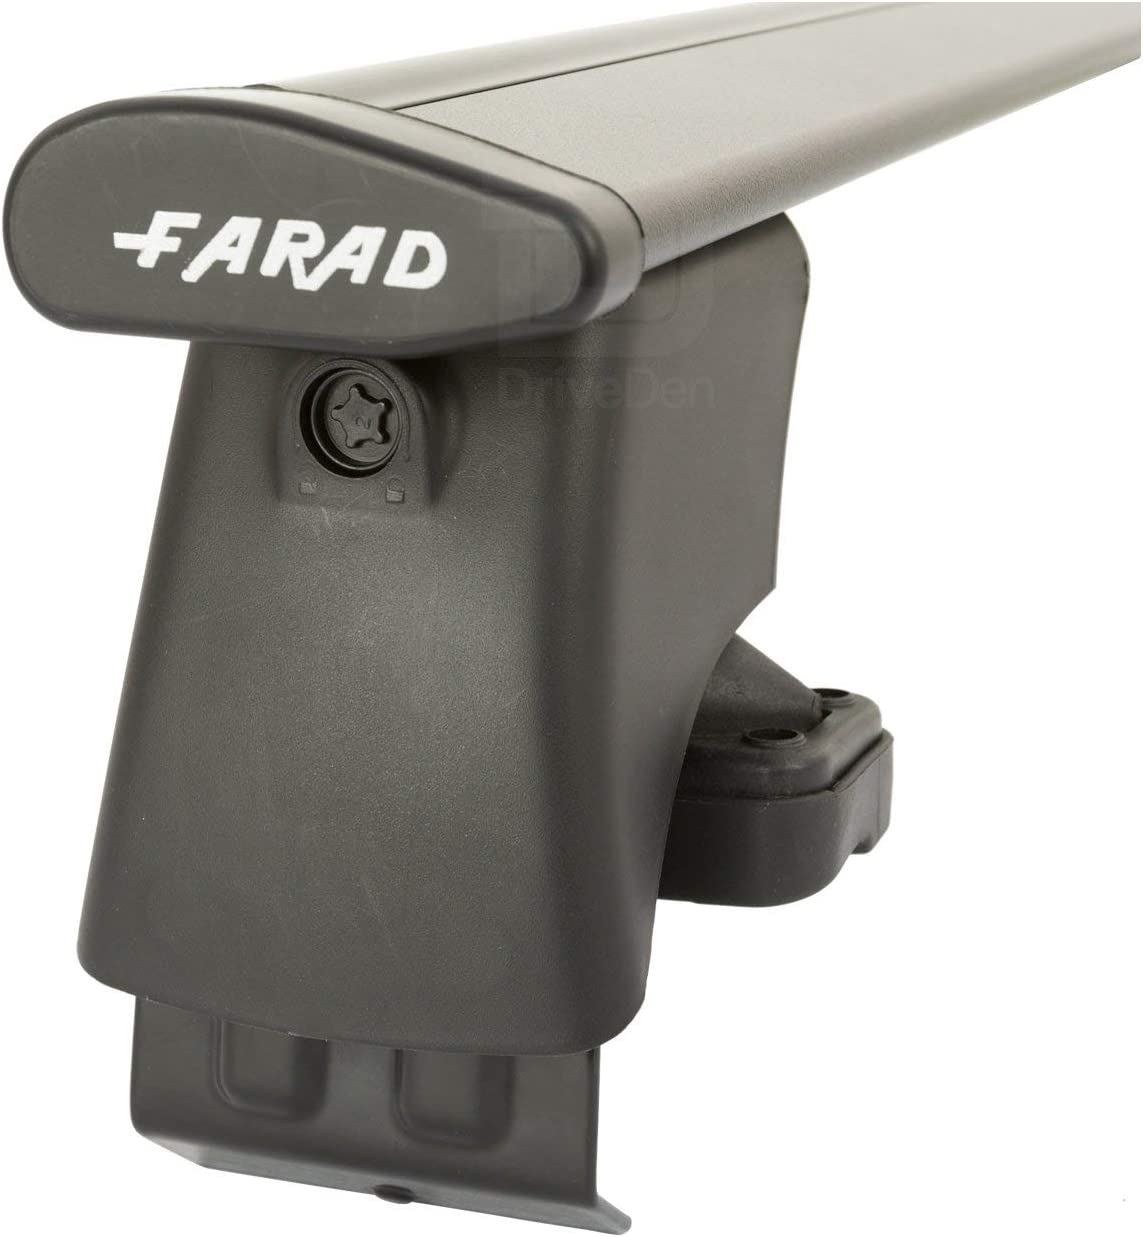 FARAD-Kit H2 per barre portatutto - Chevrolet Aveo 2006-2011 (senza corrimano)